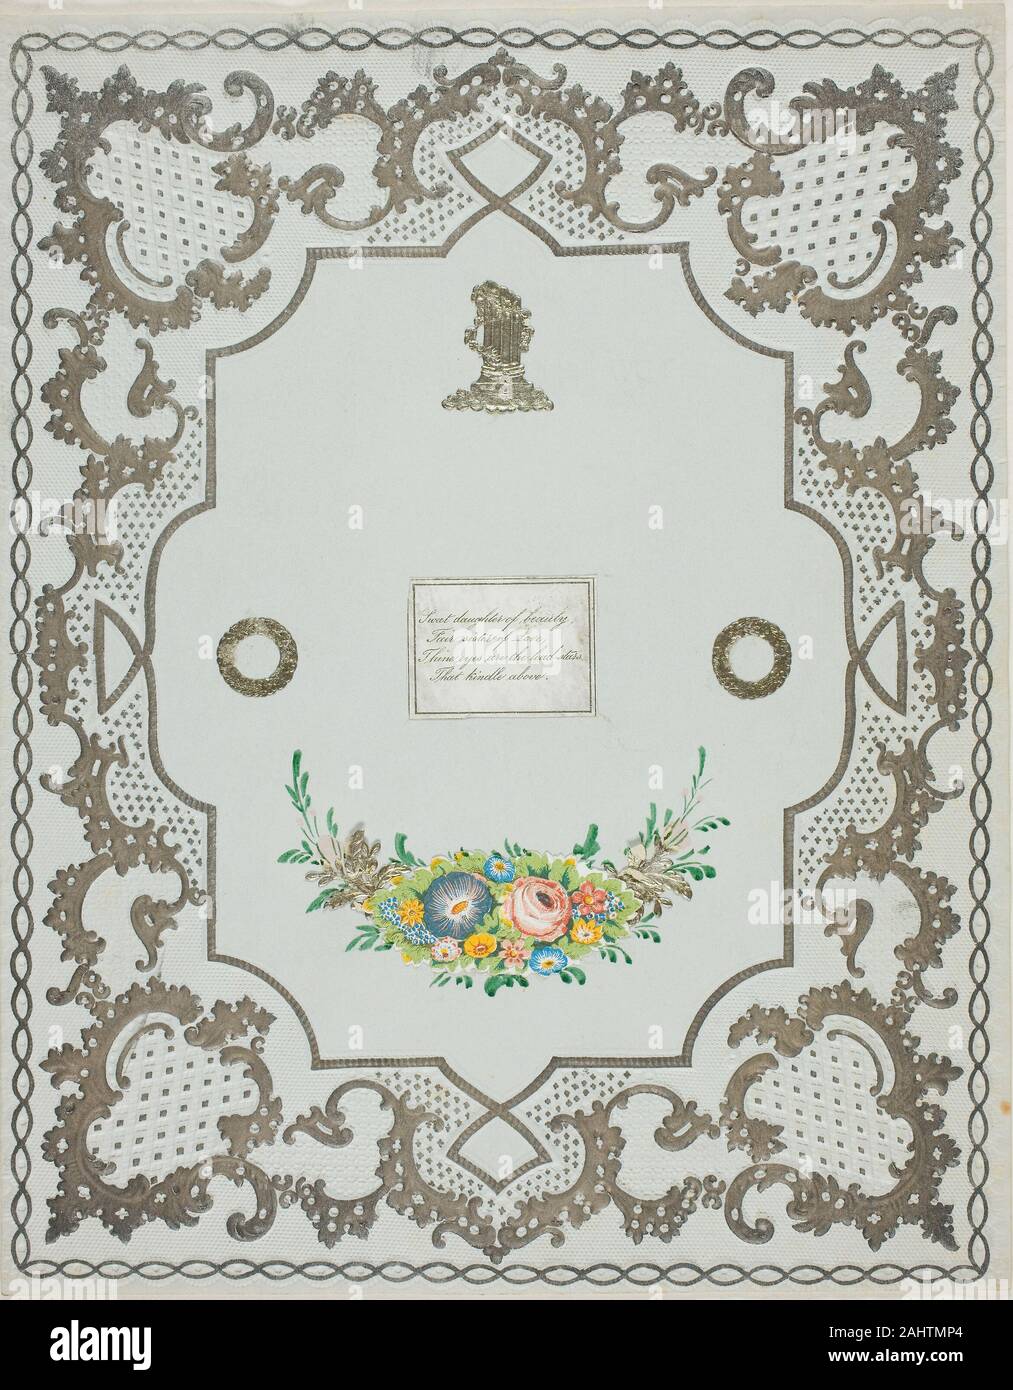 Sweet fille de beauté (valentine). 1845-1855. United States. Éléments de collage sur gris bleu en relief et accentués papier vélin Banque D'Images